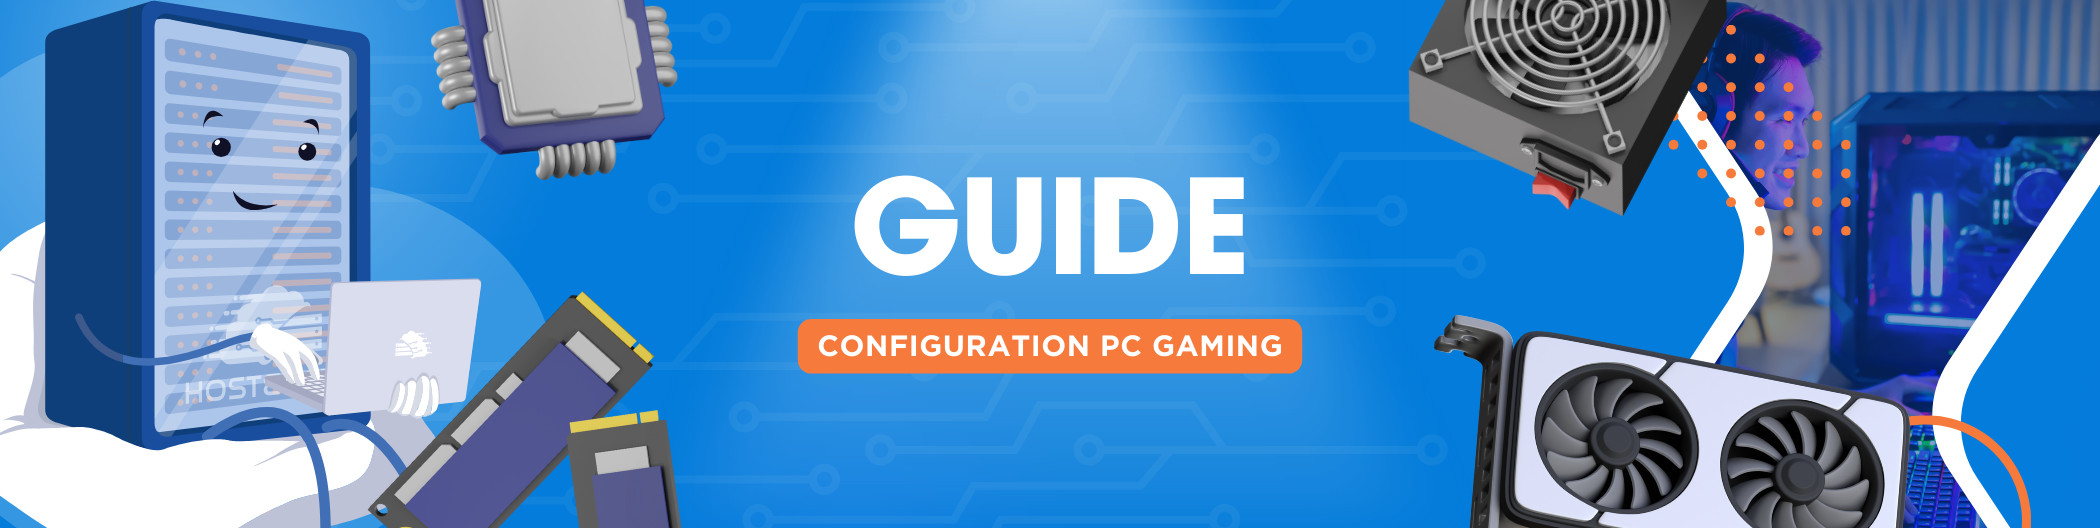 Quelle configuration pour un PC Gamer ?